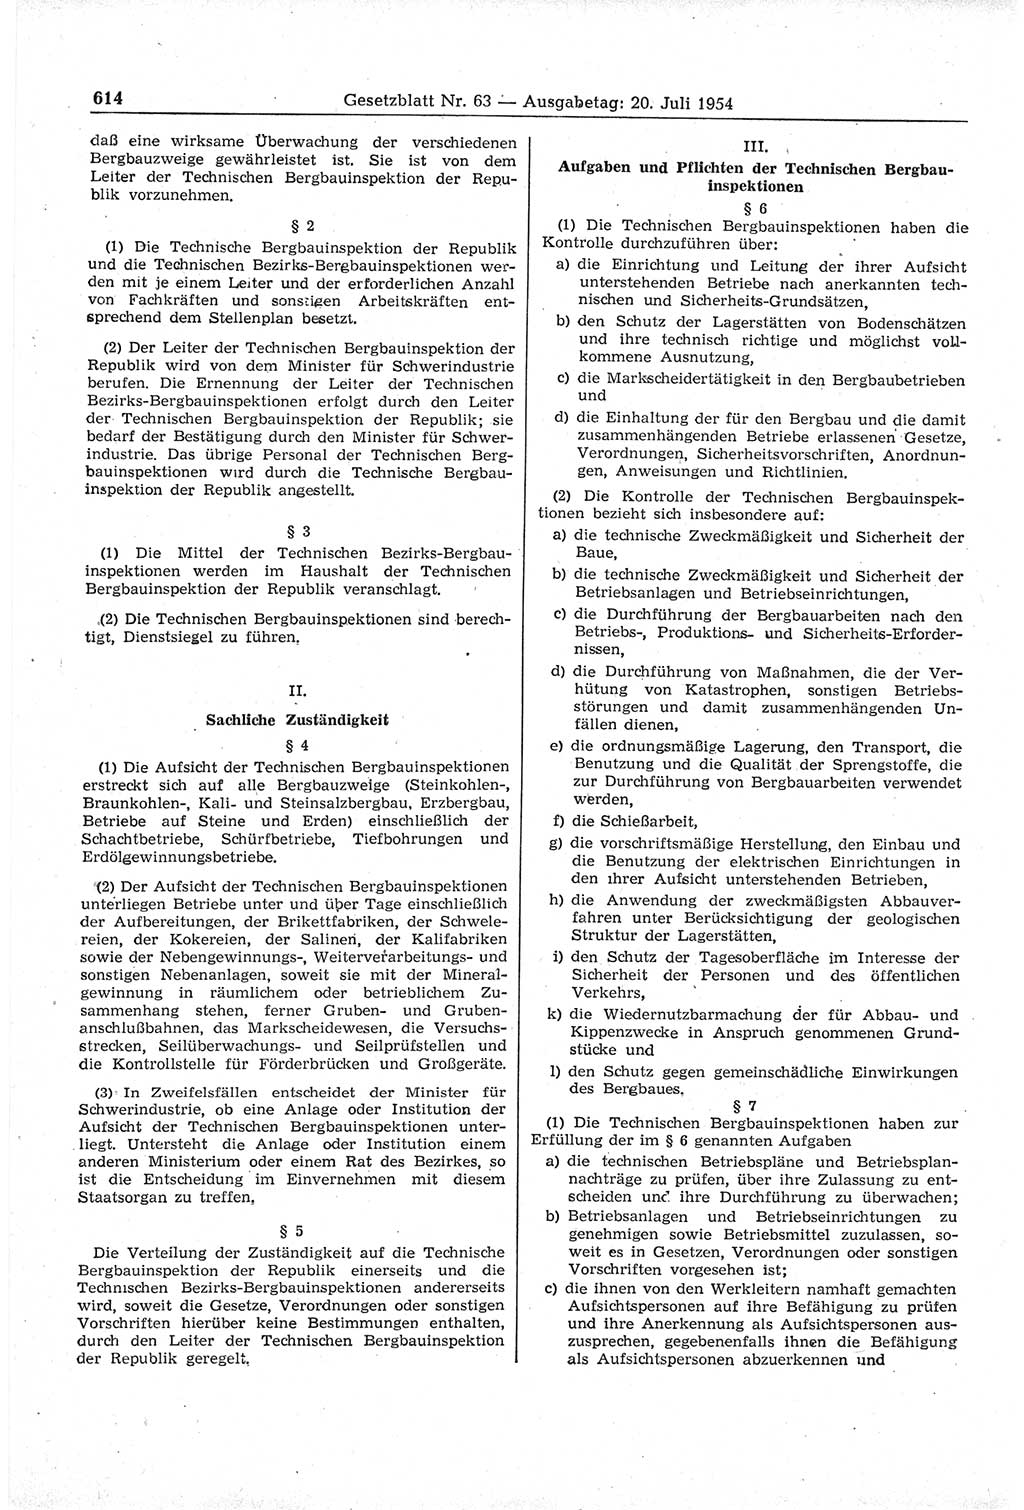 Gesetzblatt (GBl.) der Deutschen Demokratischen Republik (DDR) 1954, Seite 614 (GBl. DDR 1954, S. 614)